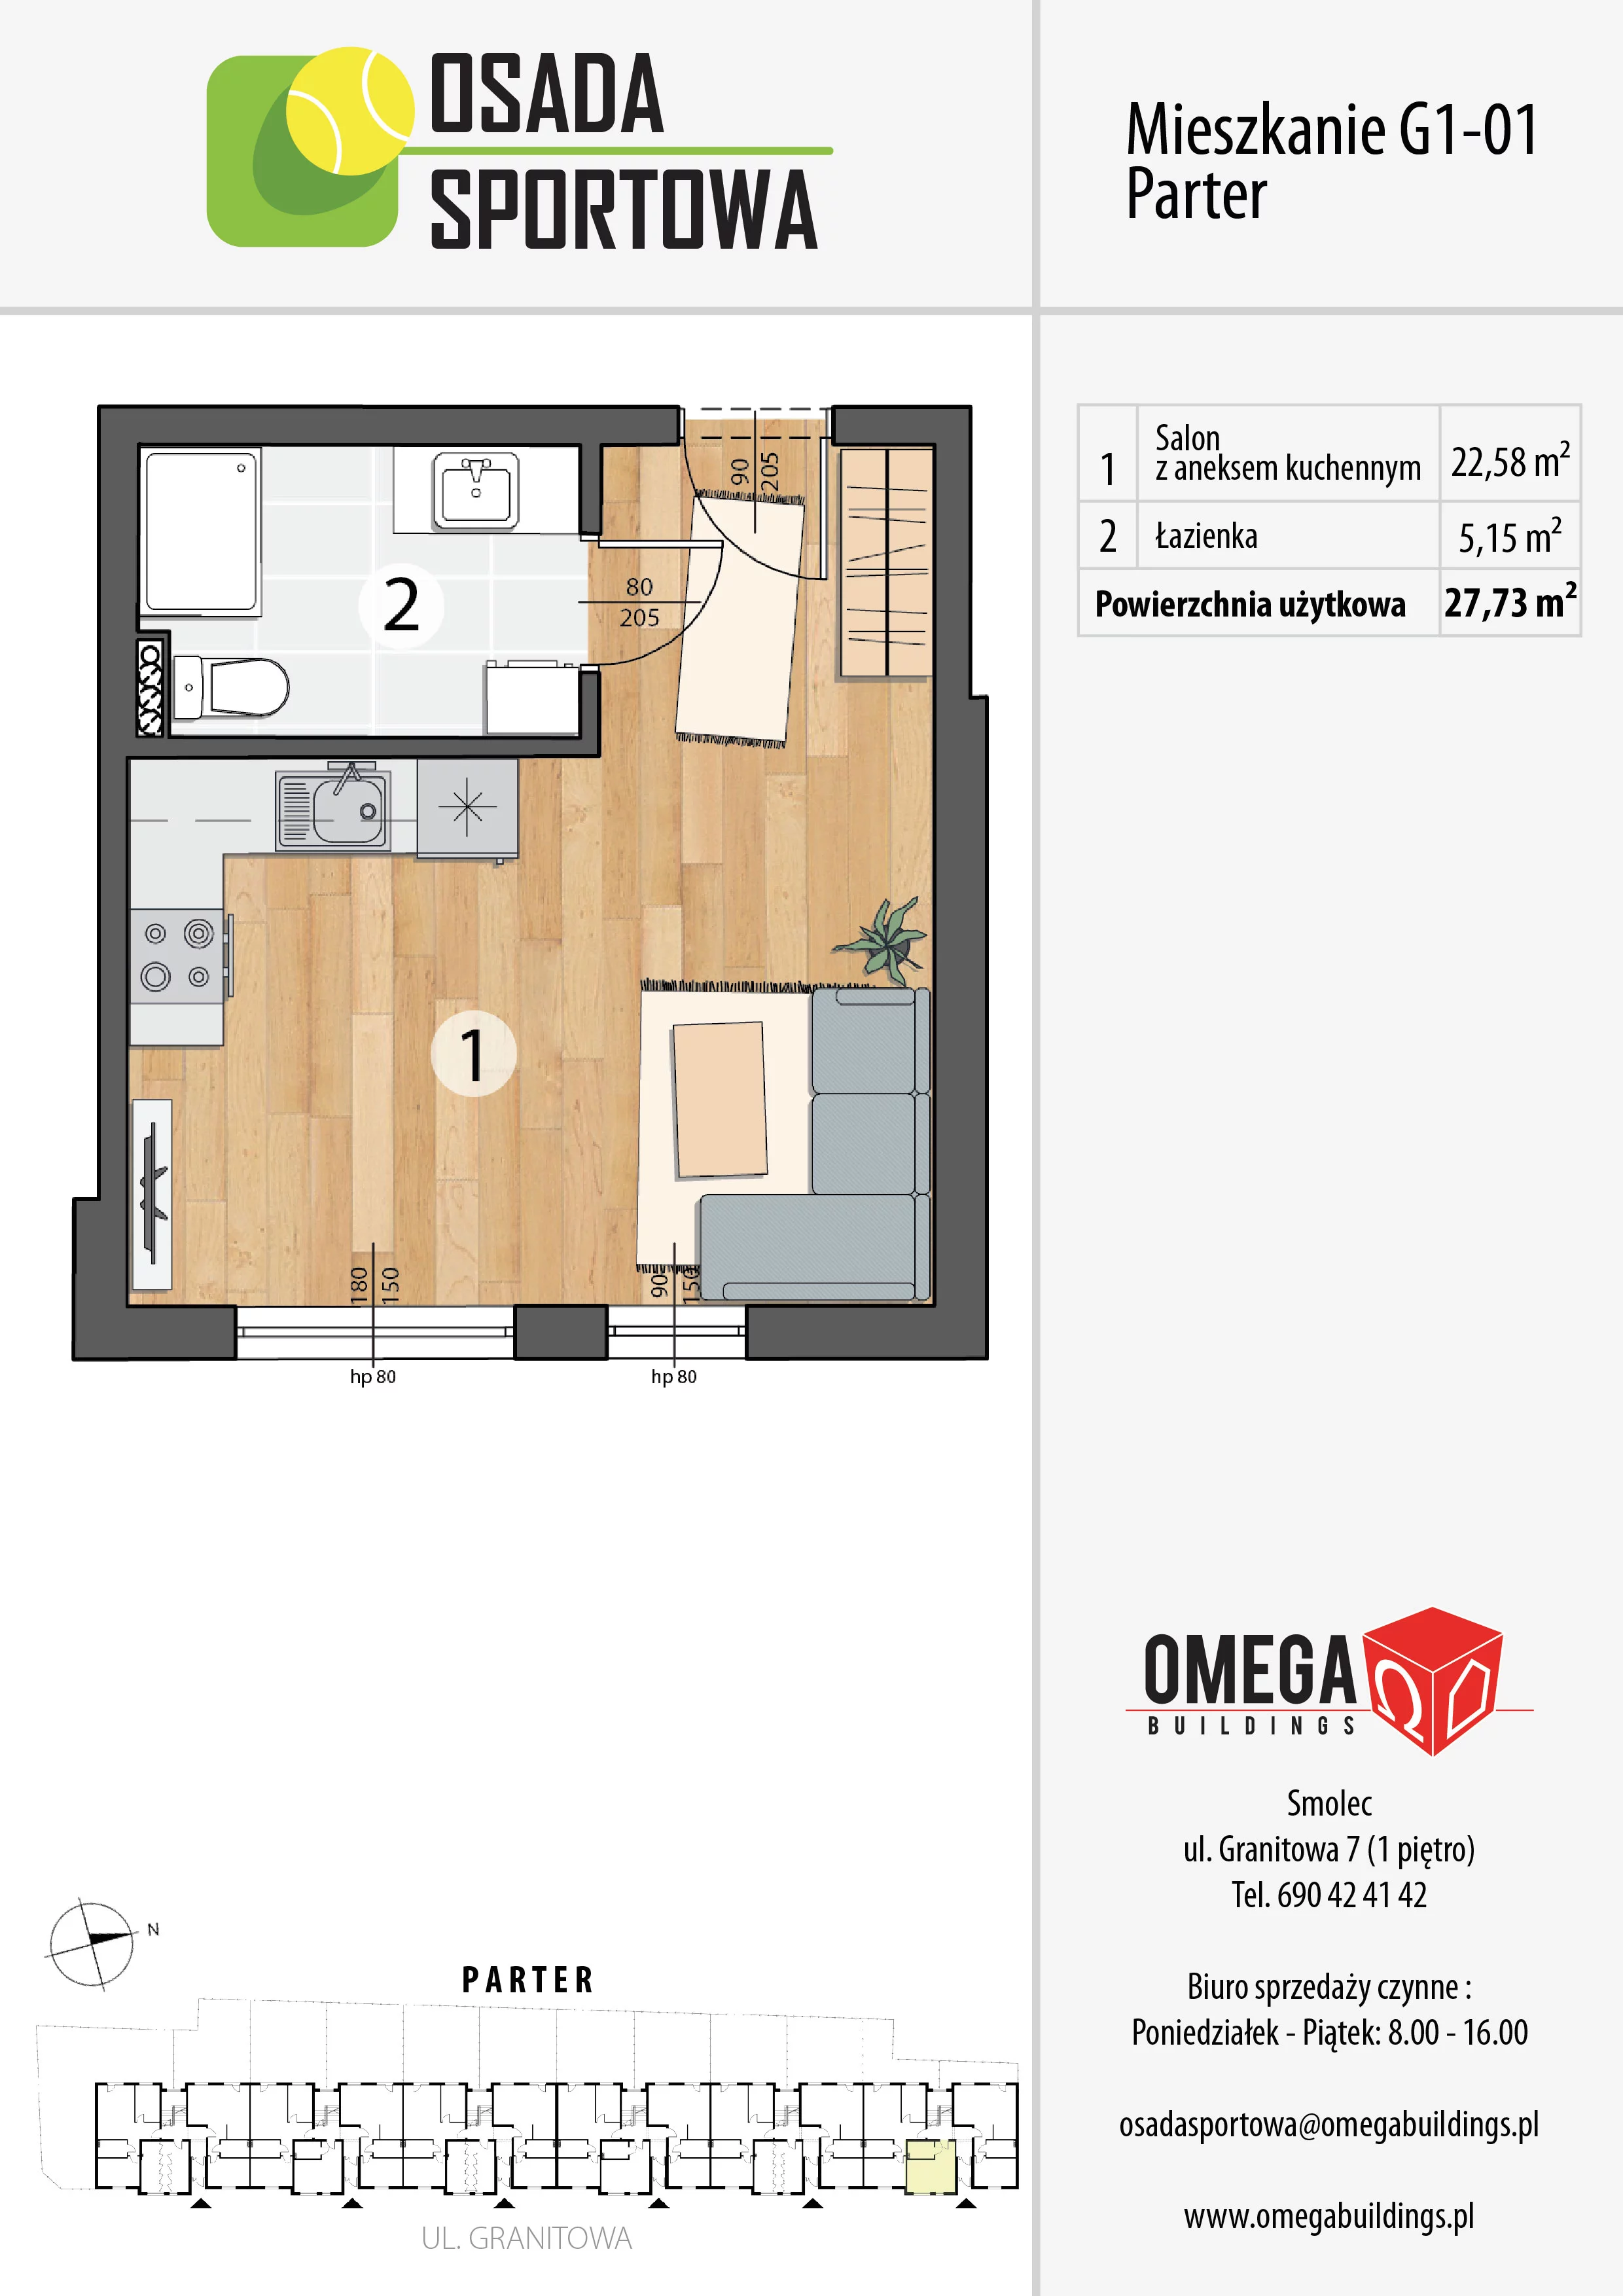 Mieszkanie 27,73 m², parter, oferta nr G1-01, Osada Sportowa Budynek G, Smolec, ul. Granitowa 52-62